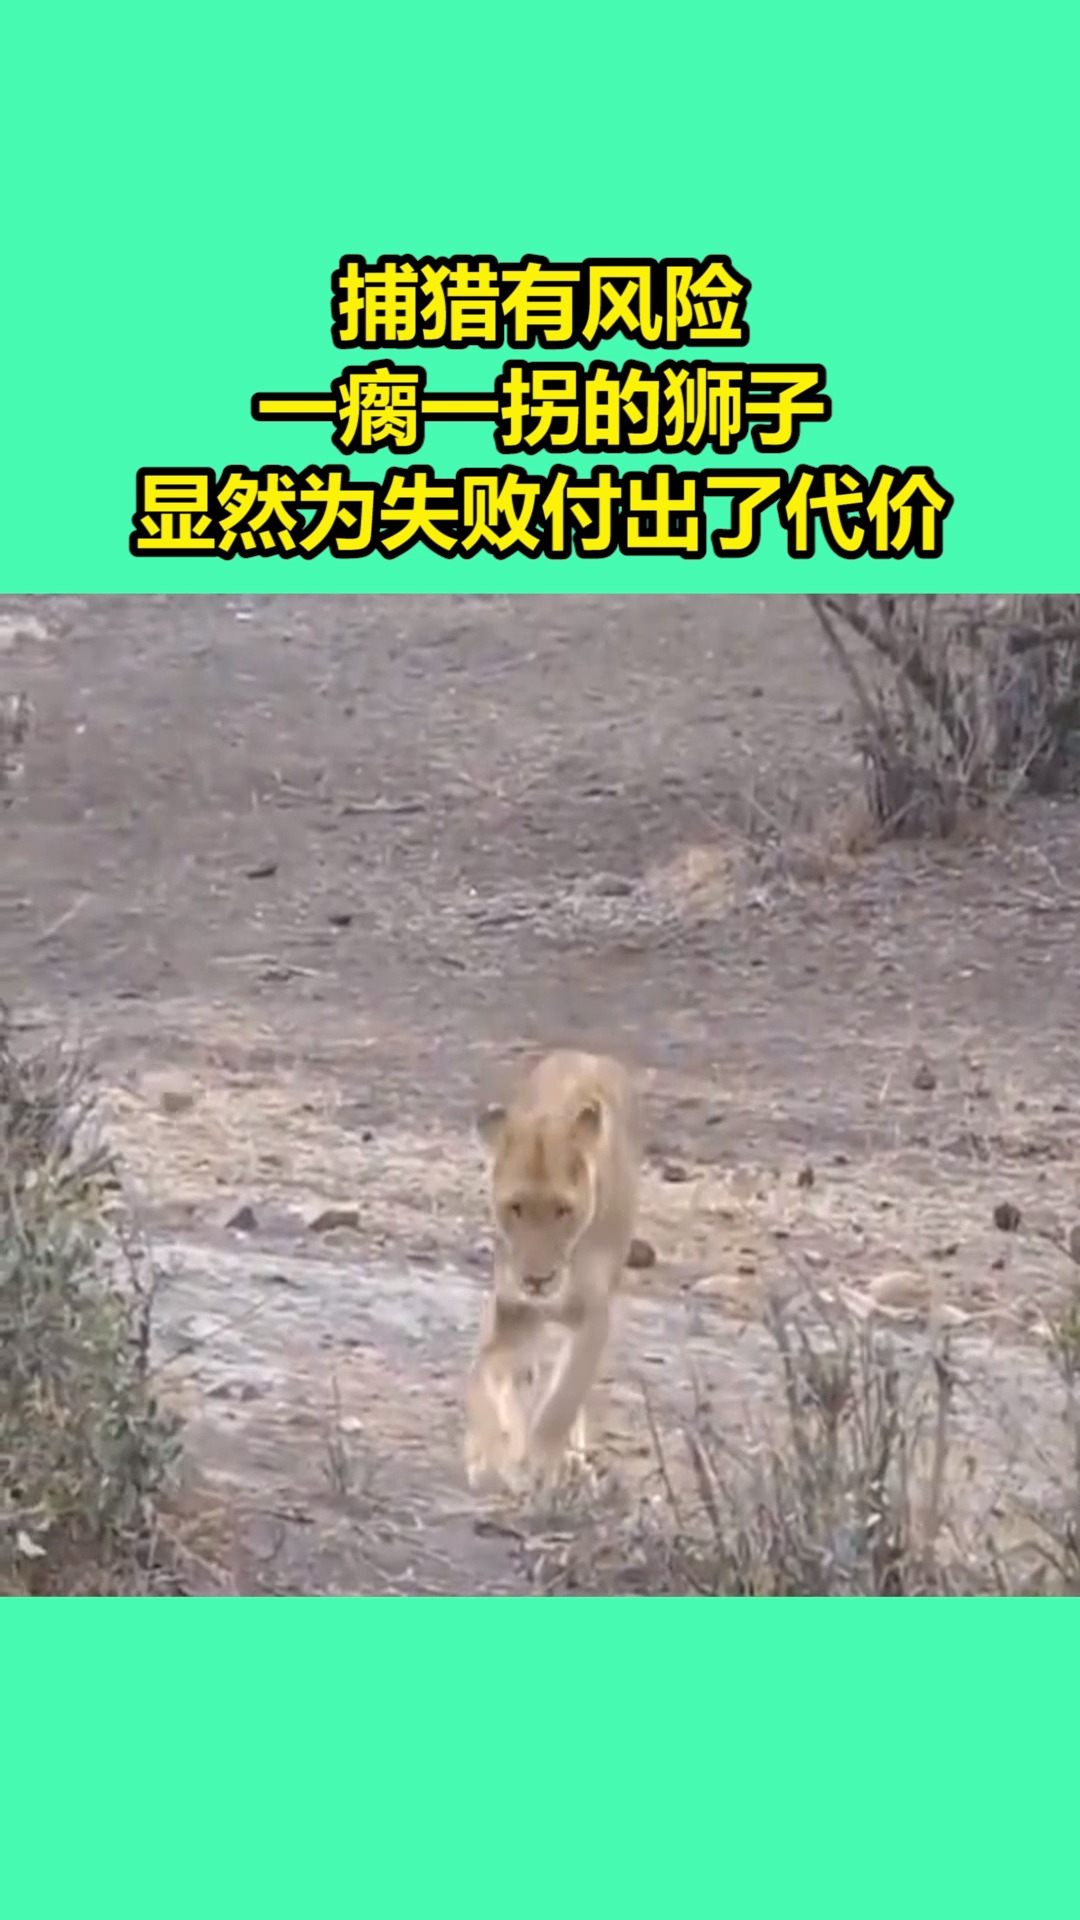 我要上热门凶猛的狮子一瘸一拐的样子让人看了忍不住心疼